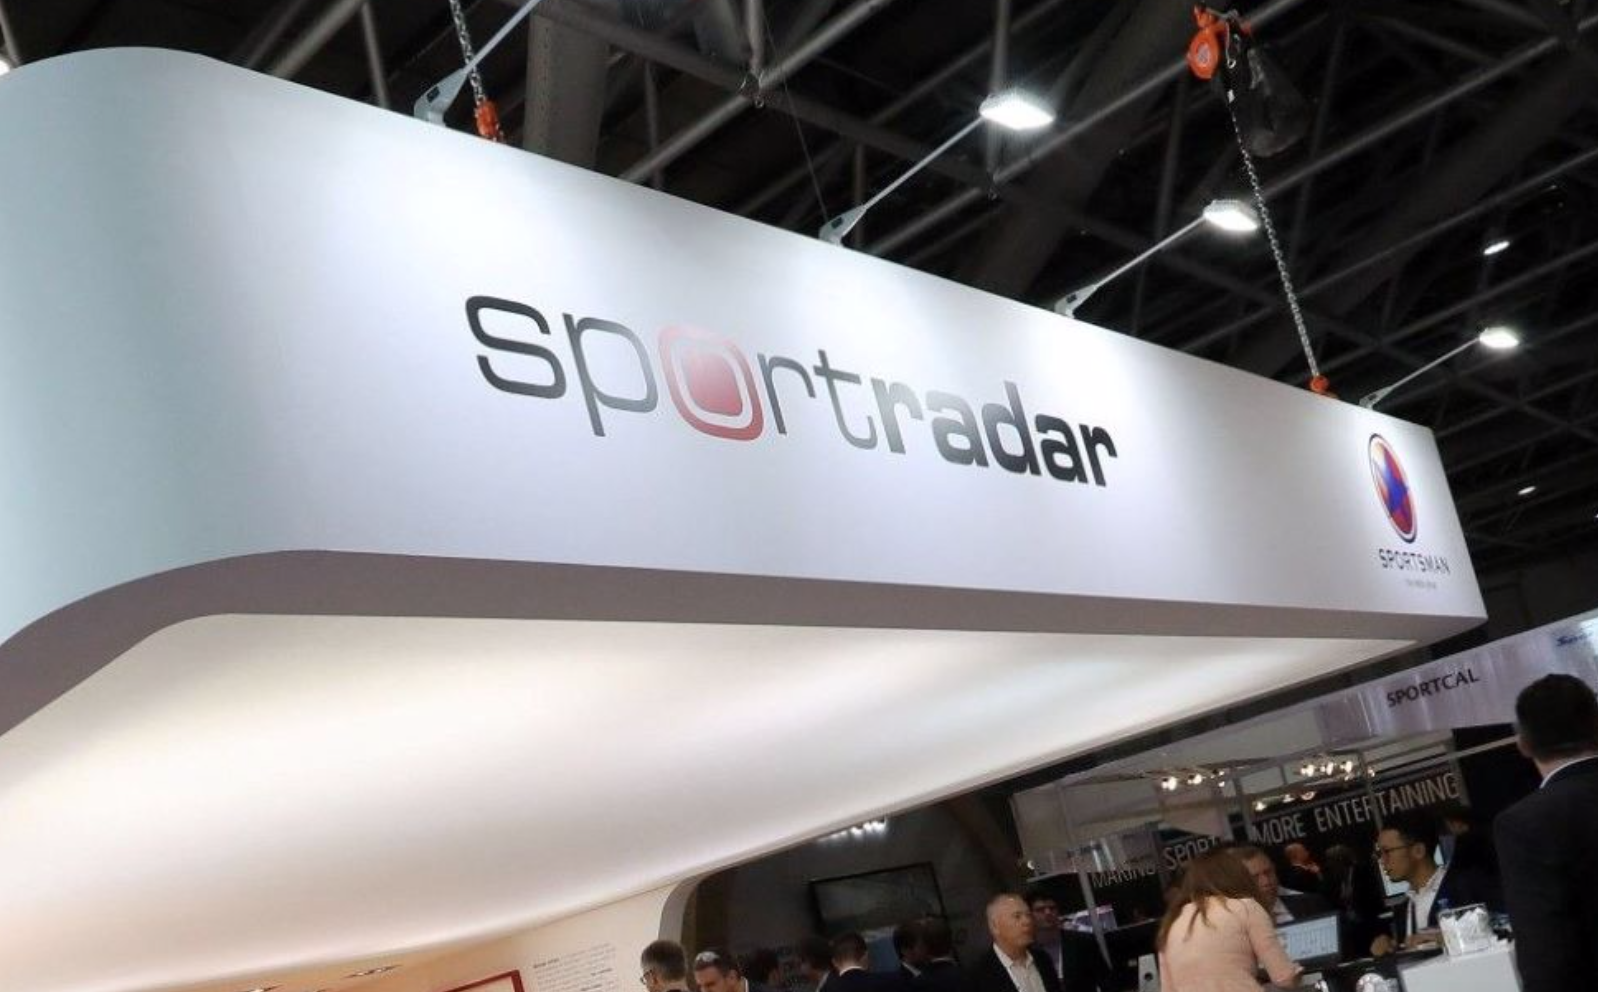 瑞士体育数据公司Sportradar公布IPO计划 拟募资6.12亿美元